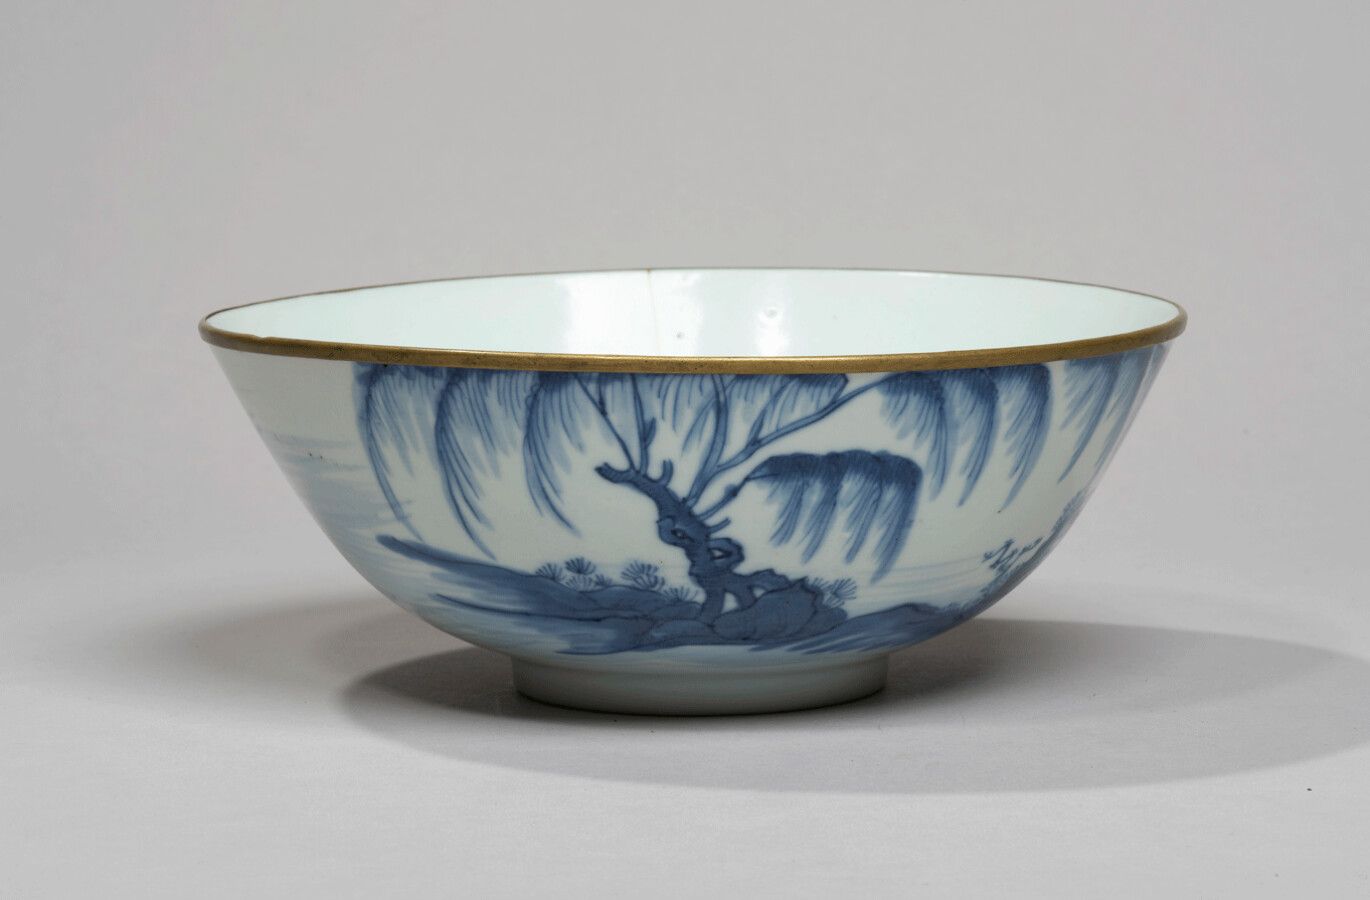 VIETNAM - XIXe siècle - 釉下青花瓷碗，饰以柳树附近的渔夫在他的舢板上。金属环状边缘。(Crack)
Diam. 17,5 cm.